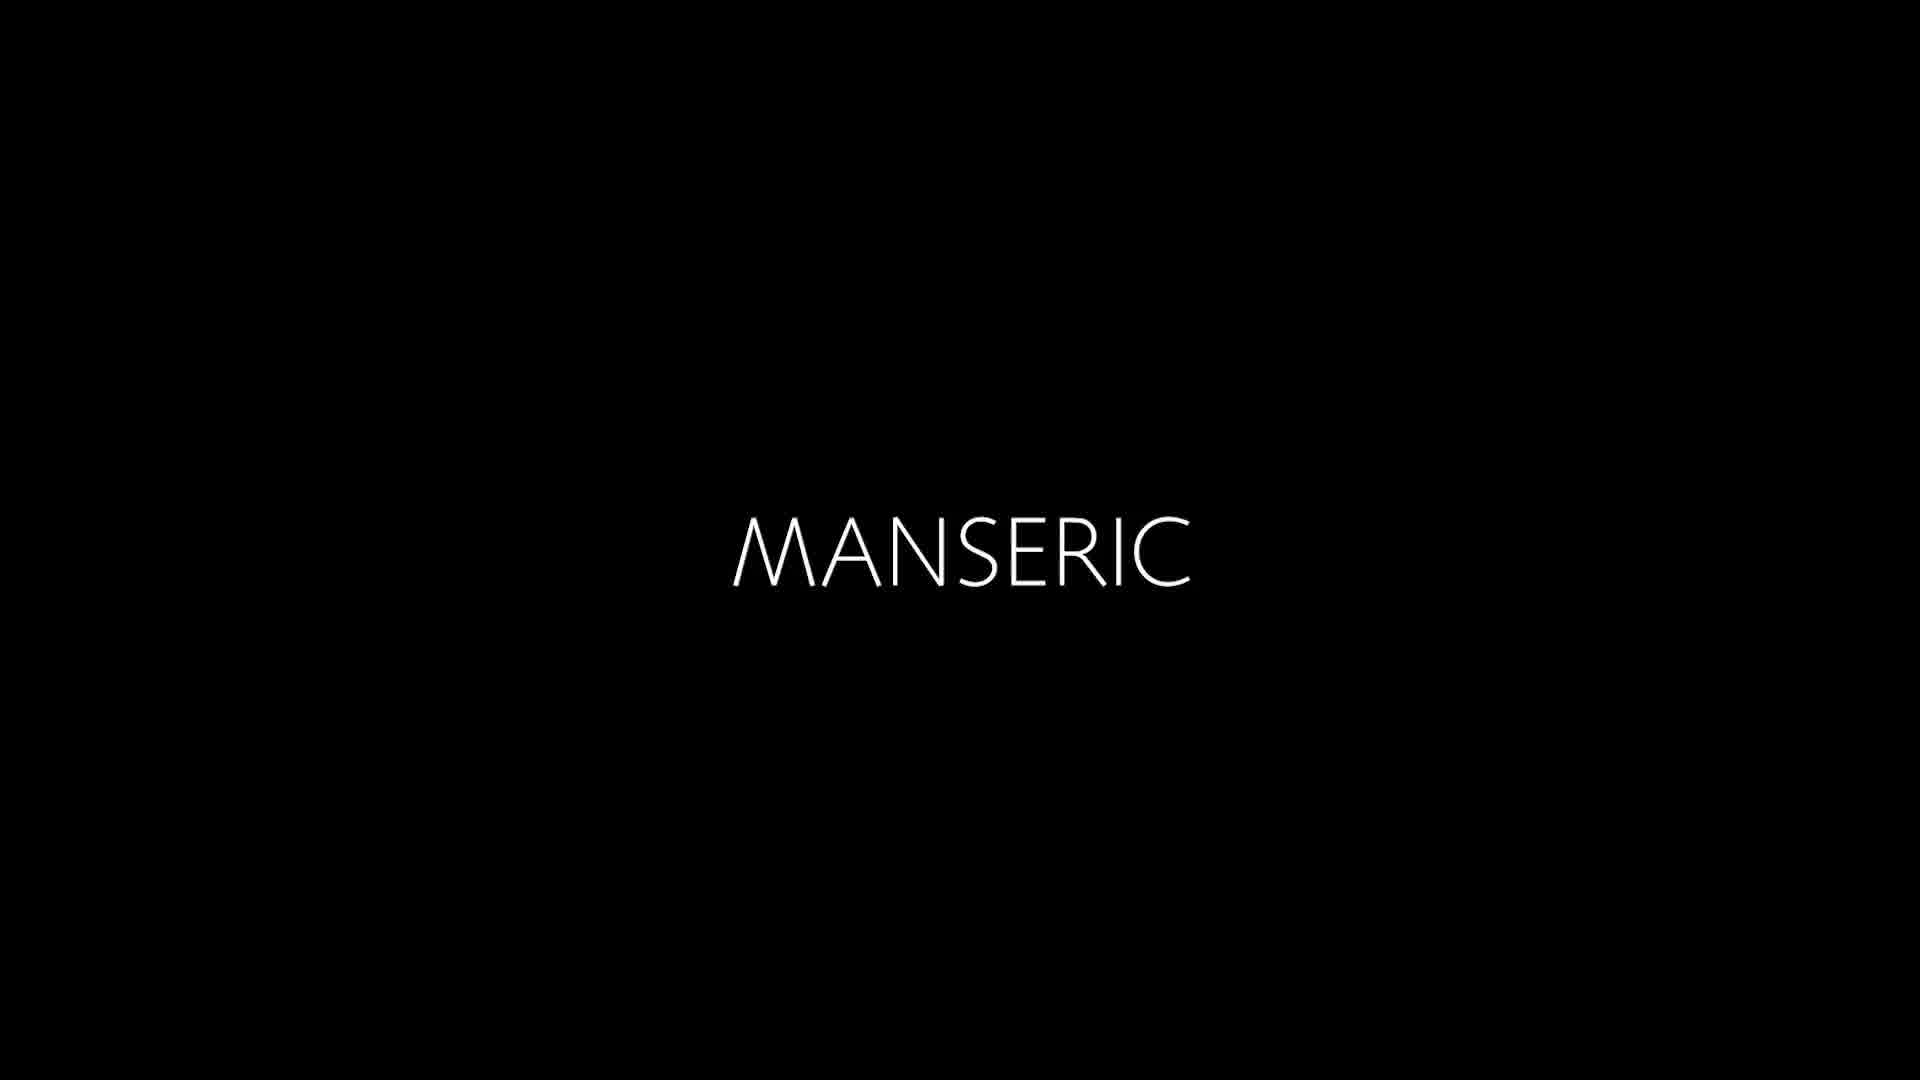 مانسریک manseric